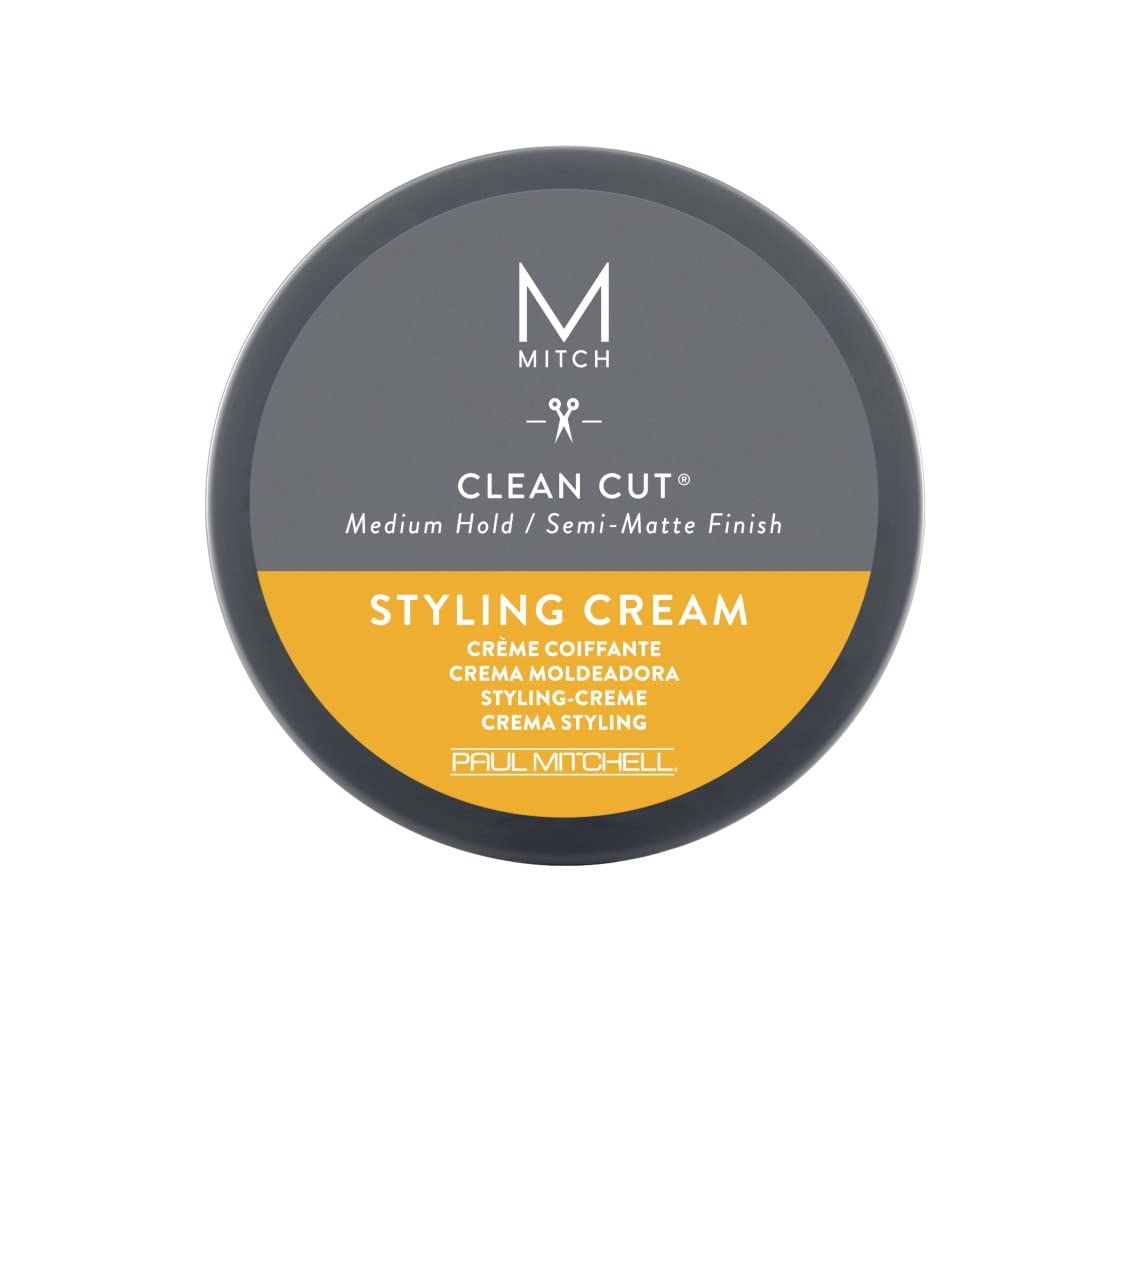 MITCH - Clean Cut Styling Cream DUO